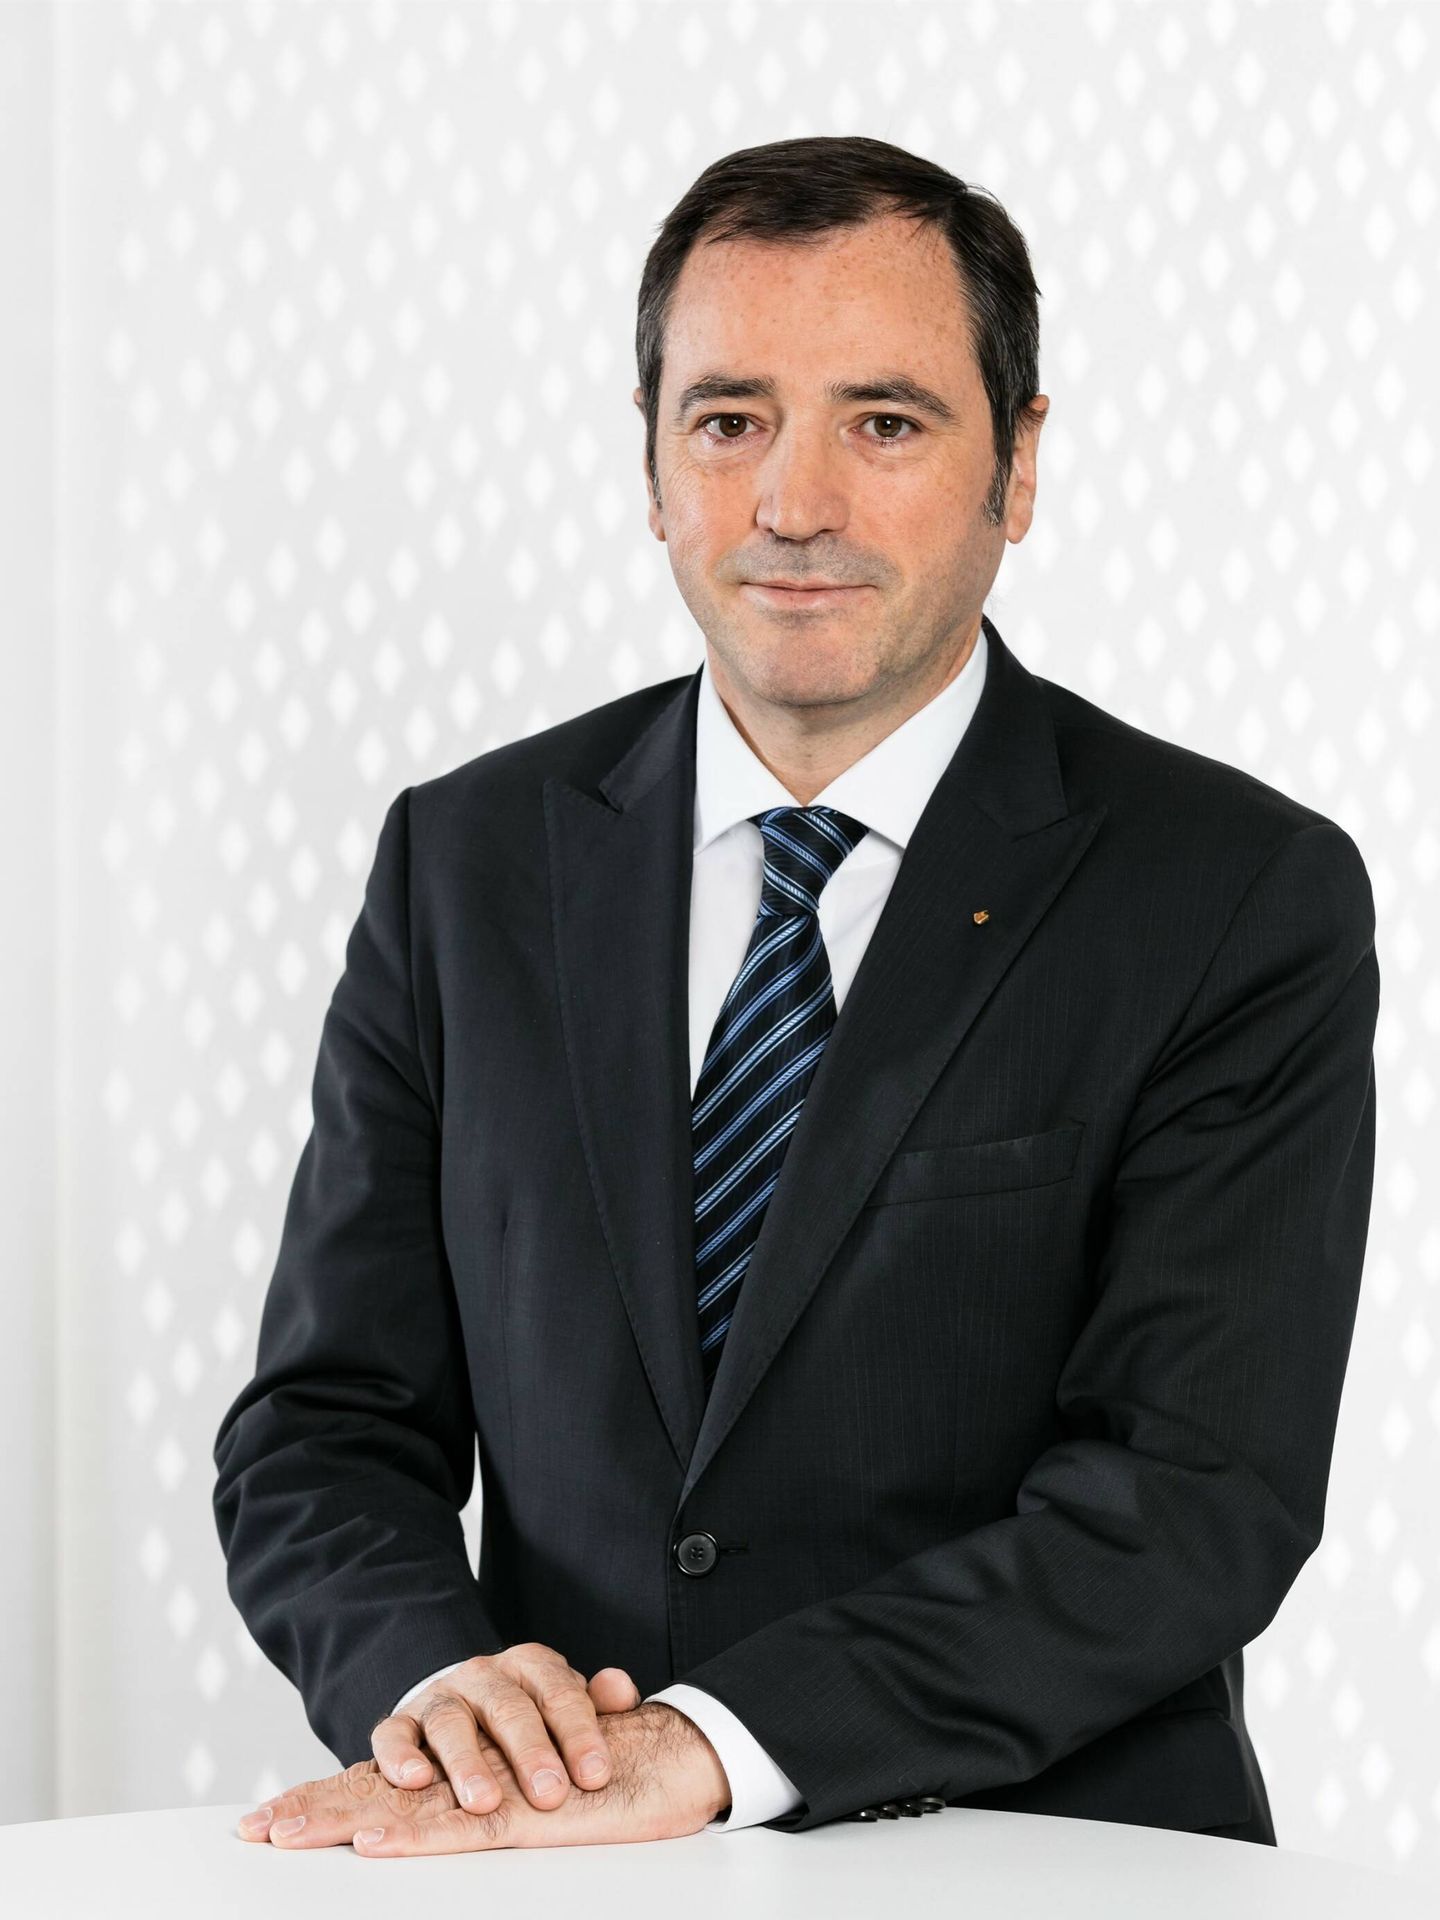 Denis Le Vot es el CEO de la marca Dacia, y con él ha charlado El Confidencial.